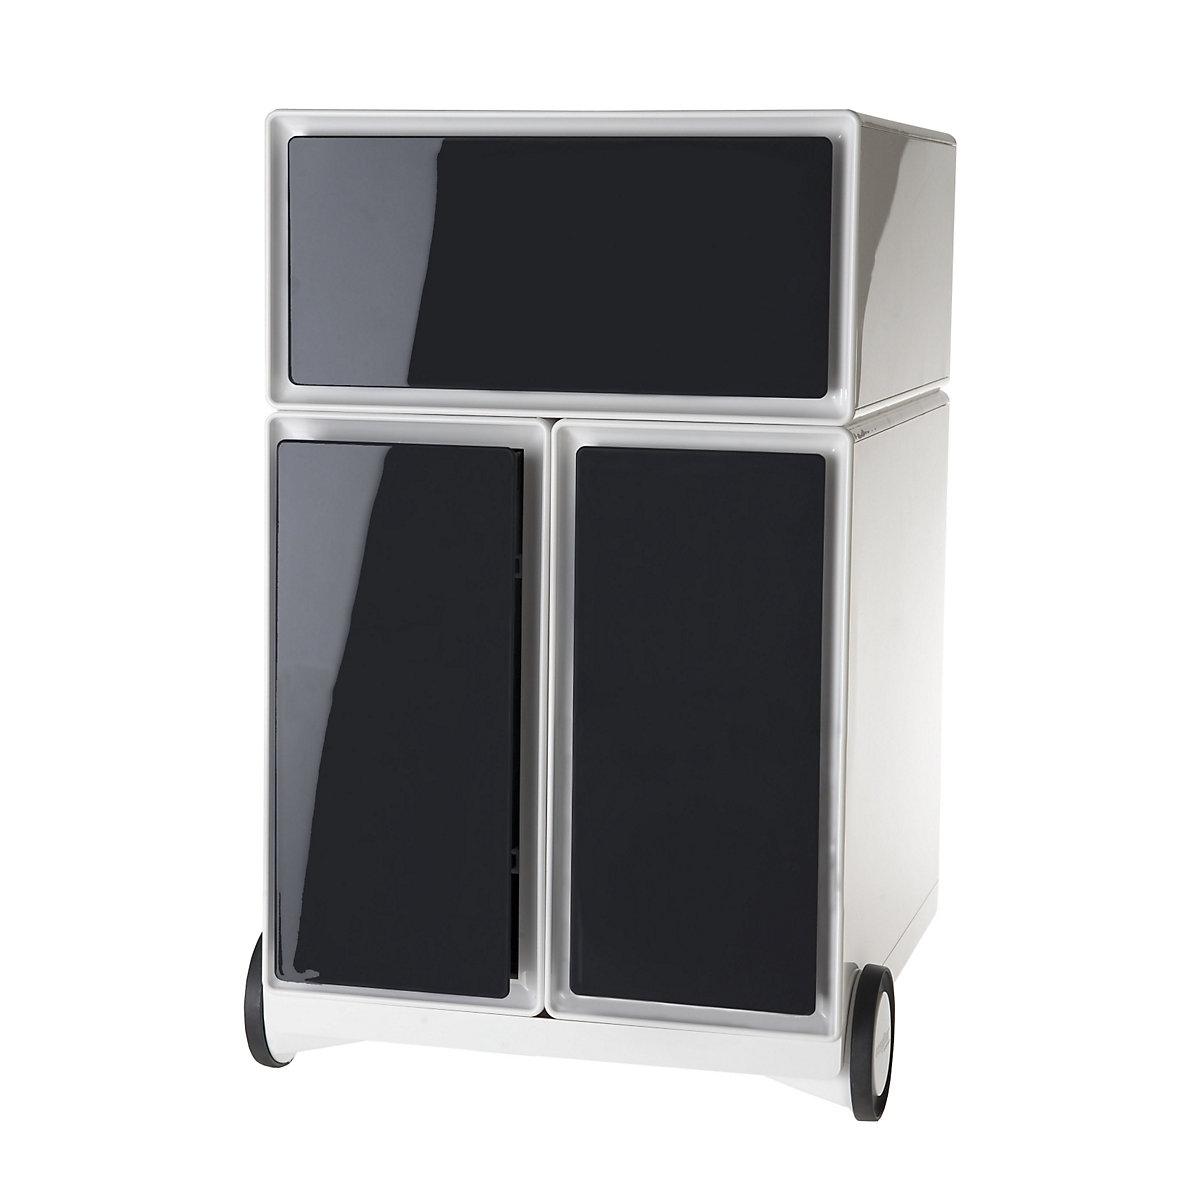 Pojízdný kontejner easyBox® – Paperflow, 1 zásuvka, 2 výsuvy pro závěsné složky, bílá / černá-10